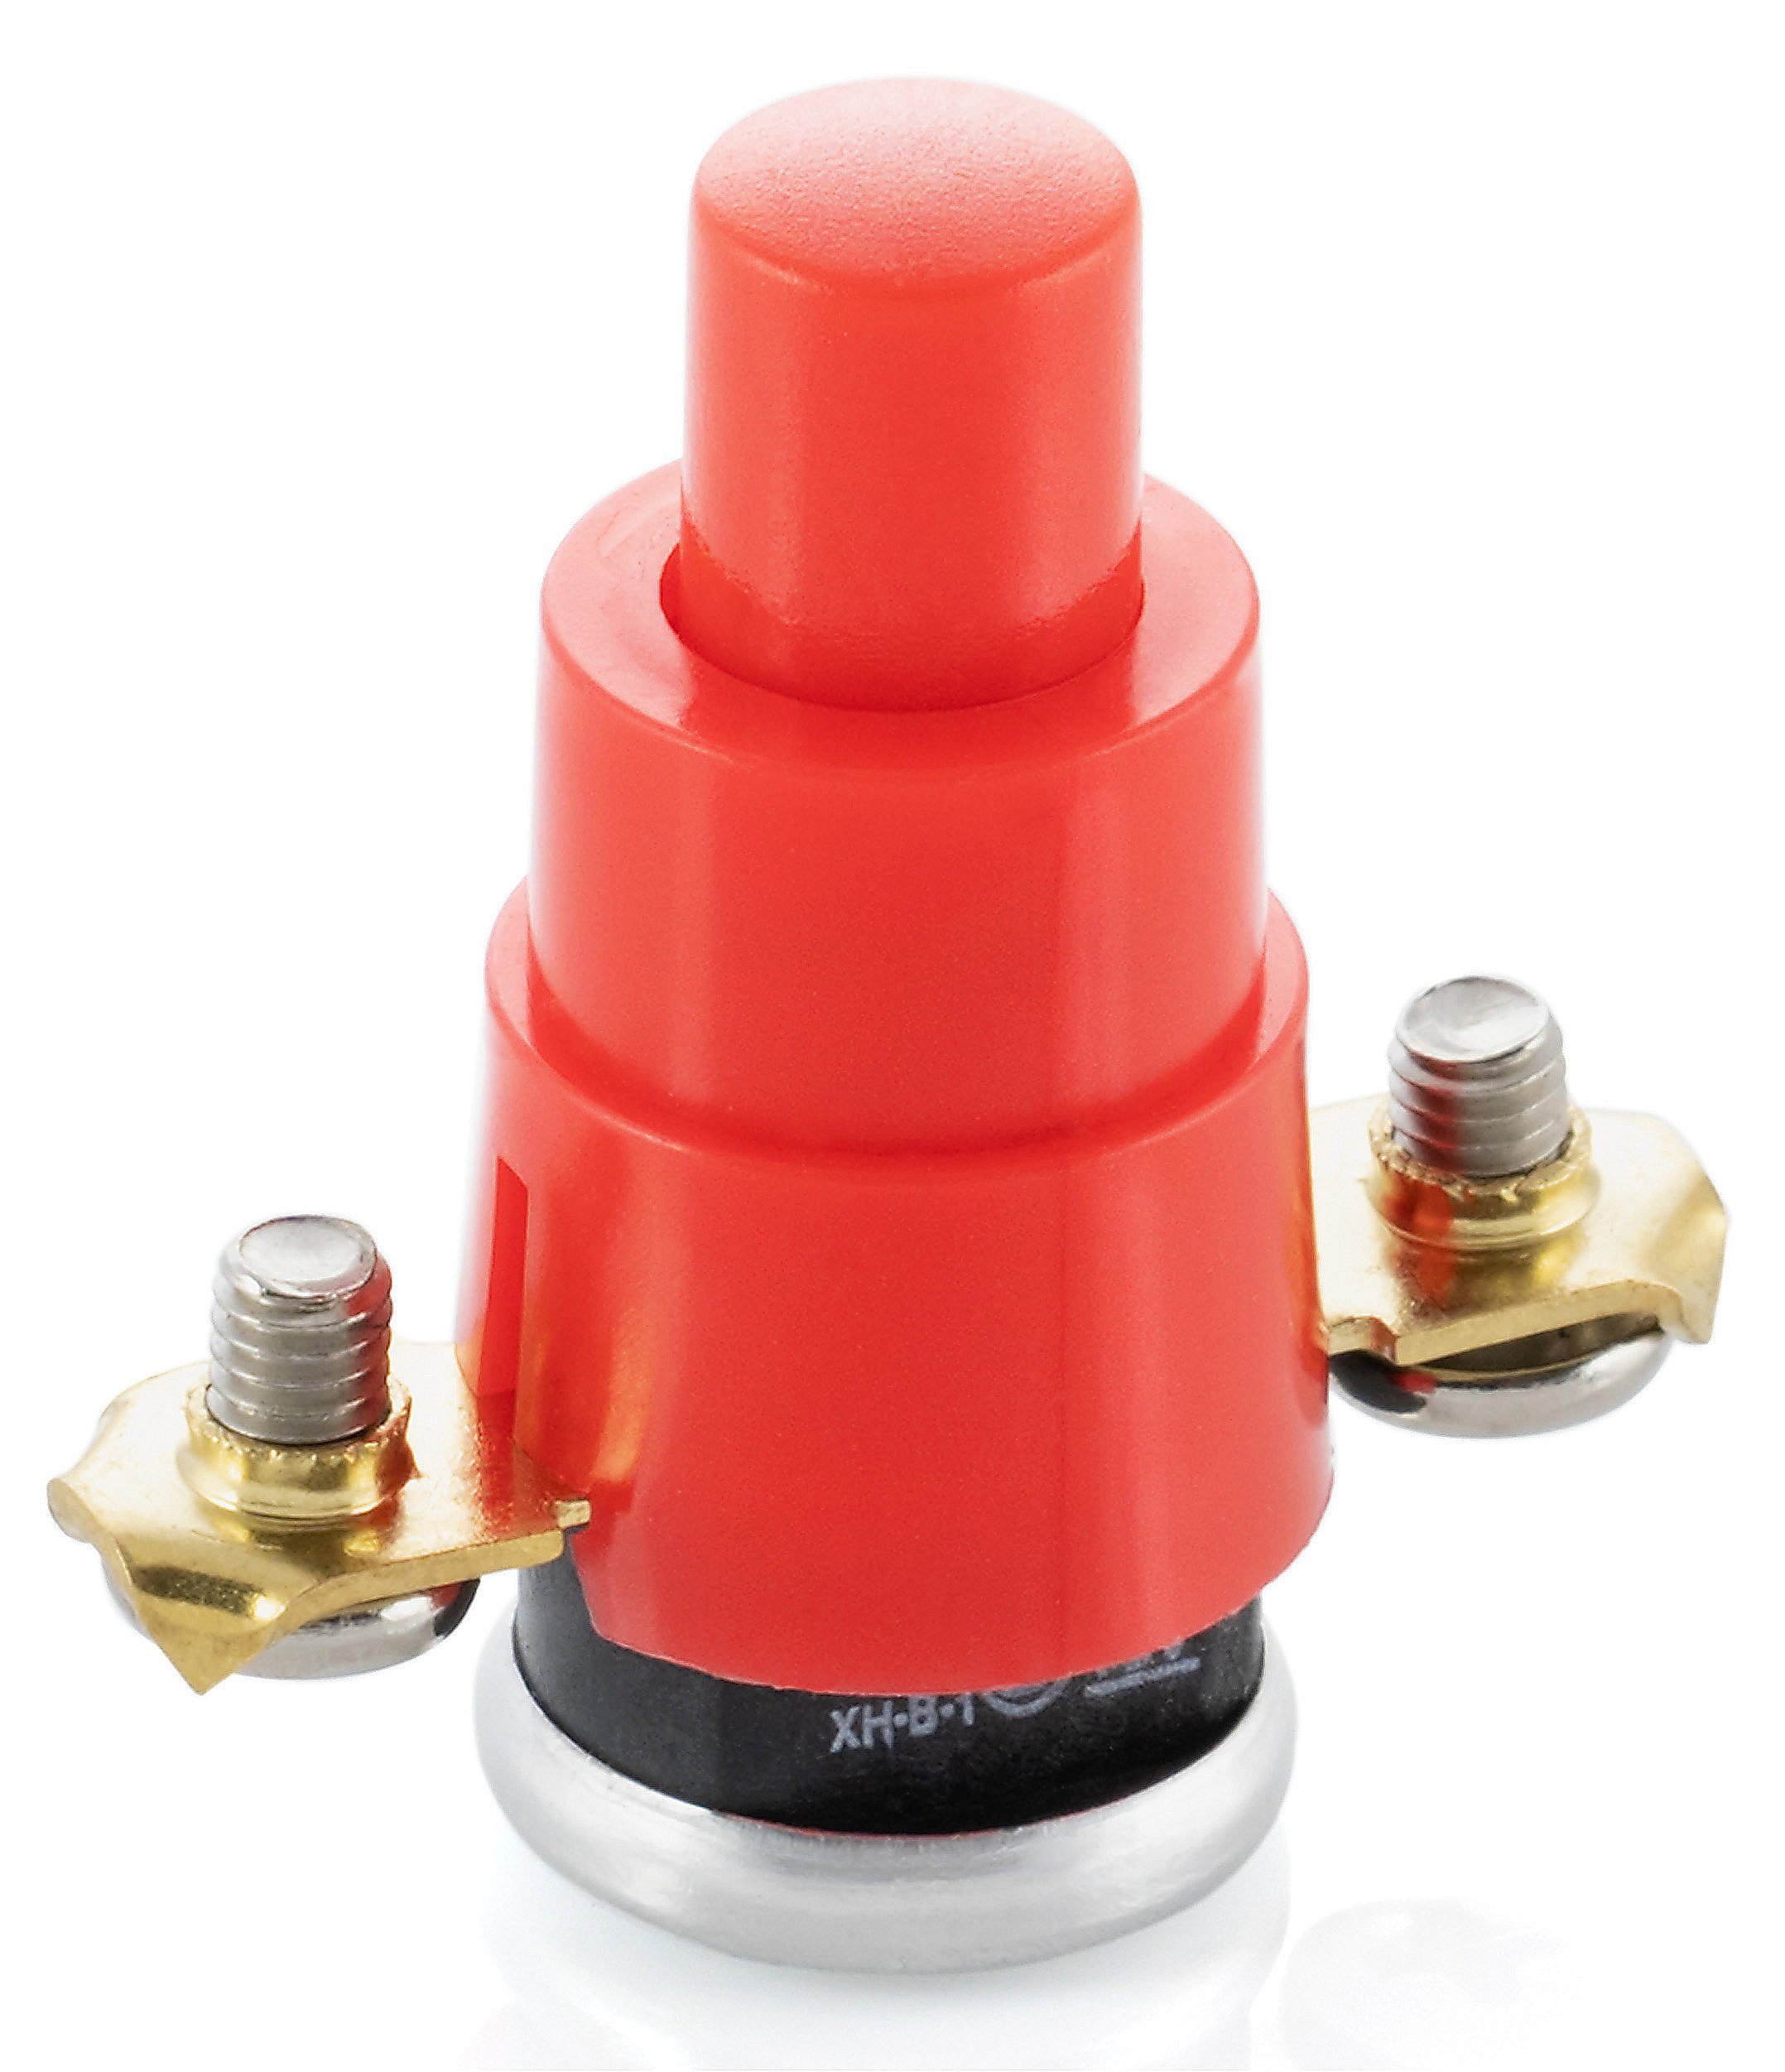 Poppstar Schalter Thermoschutzschalter, Überhitzungsschutz für Kabeltrommel (1-polig, 250V, 16A, 56 °C)